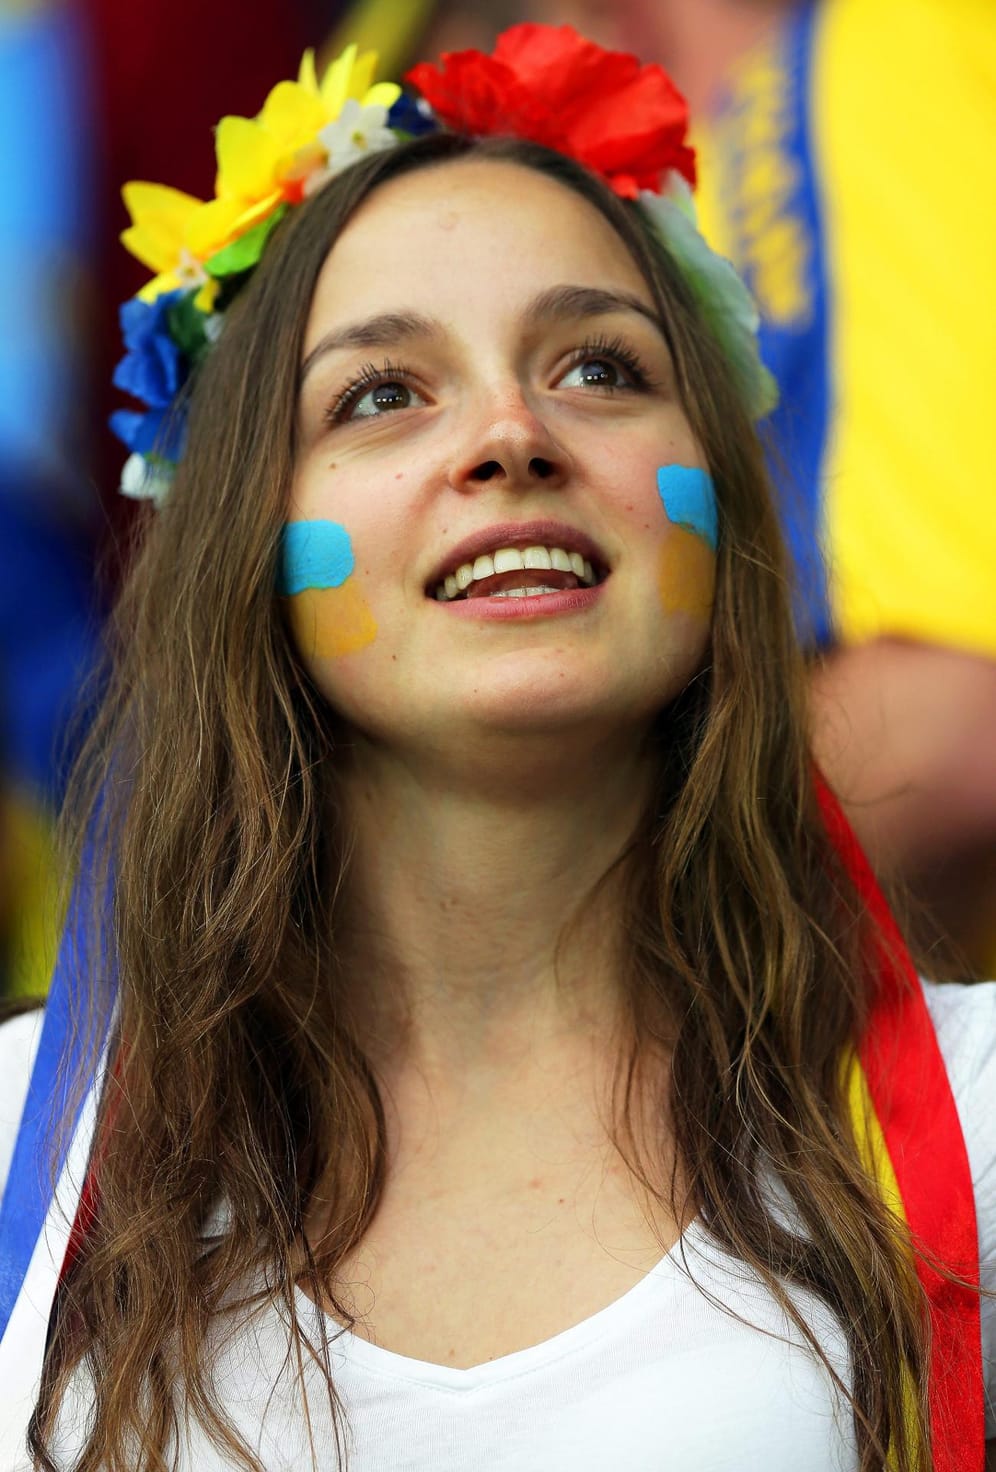 Noch ein ukrainischer Fan und wieder sehen wir einen Blumenkranz im Haar.